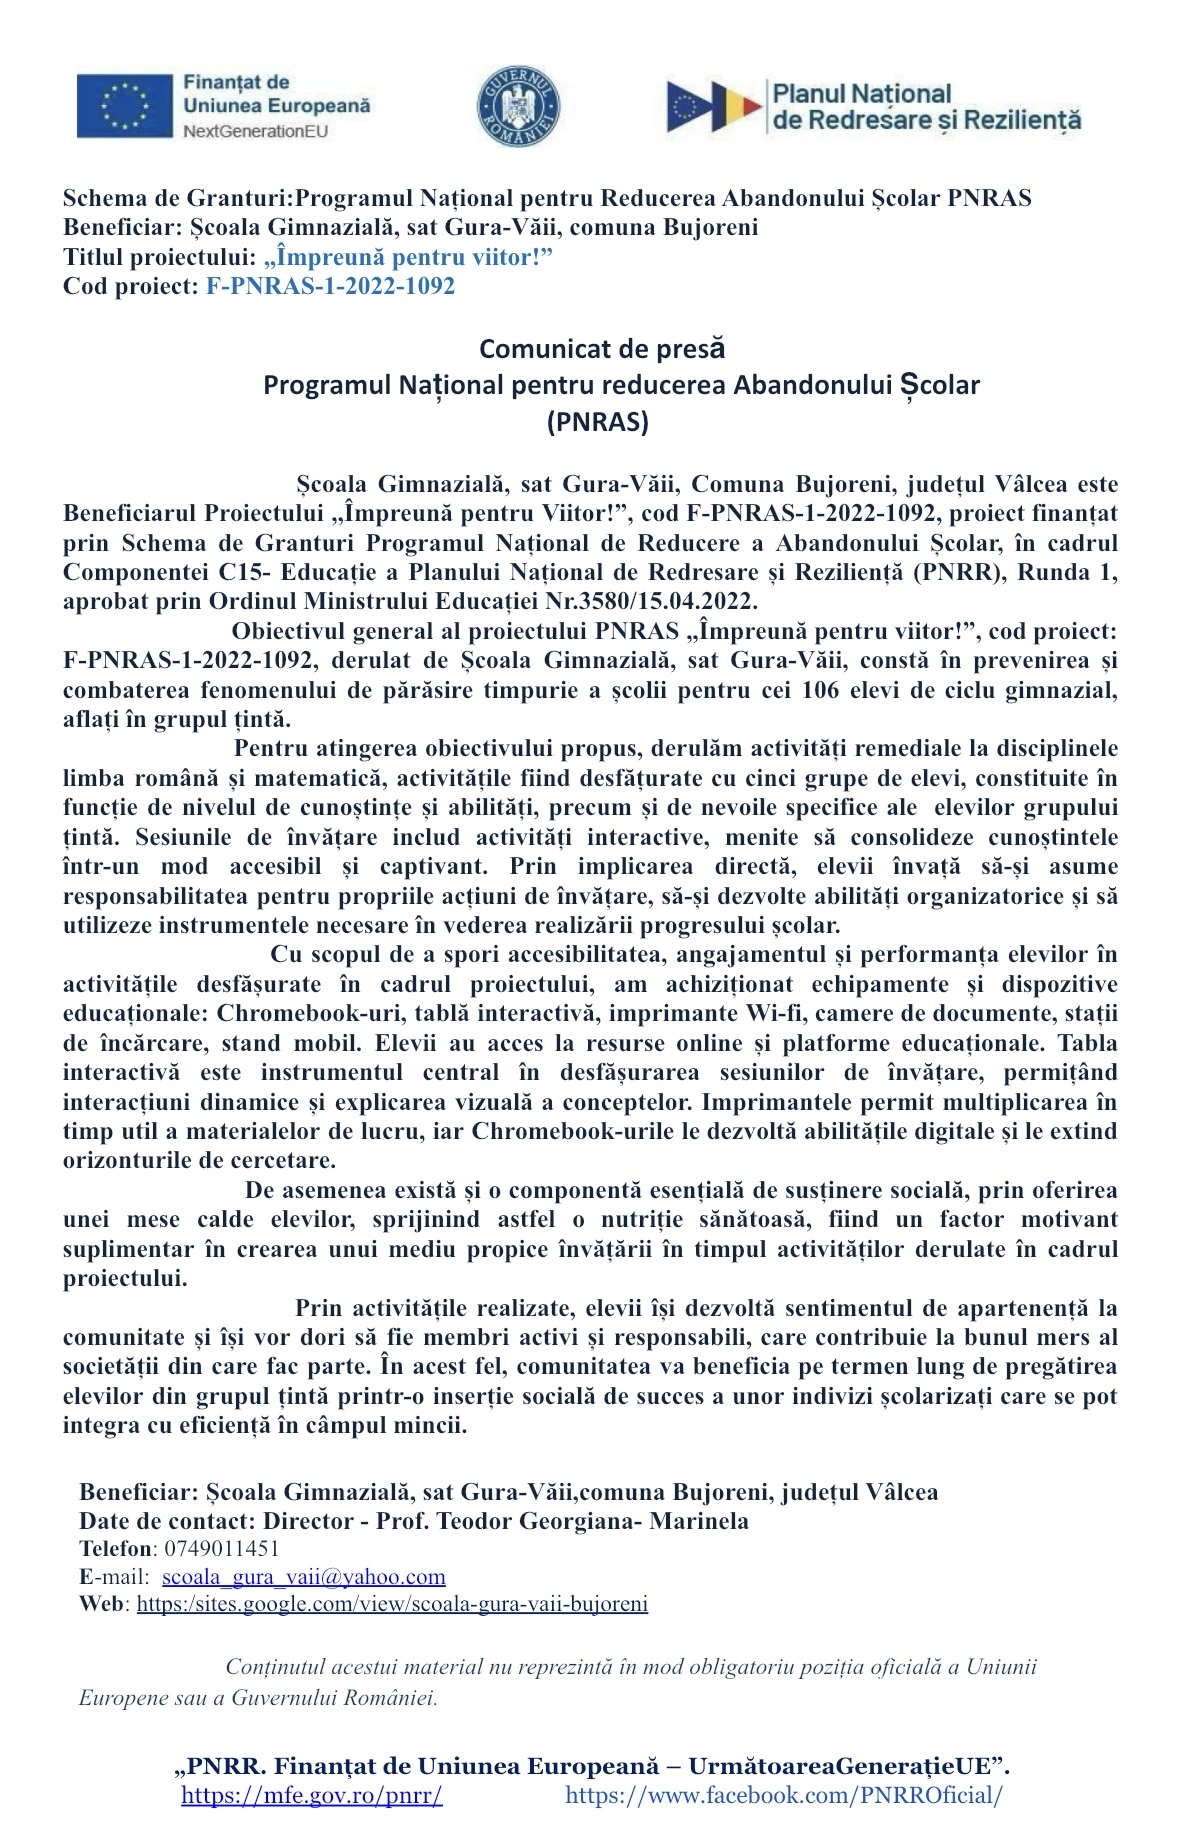 Comunicat de presă: Programul Național pentru reducerea Abandonului Școlar (PNRAS)